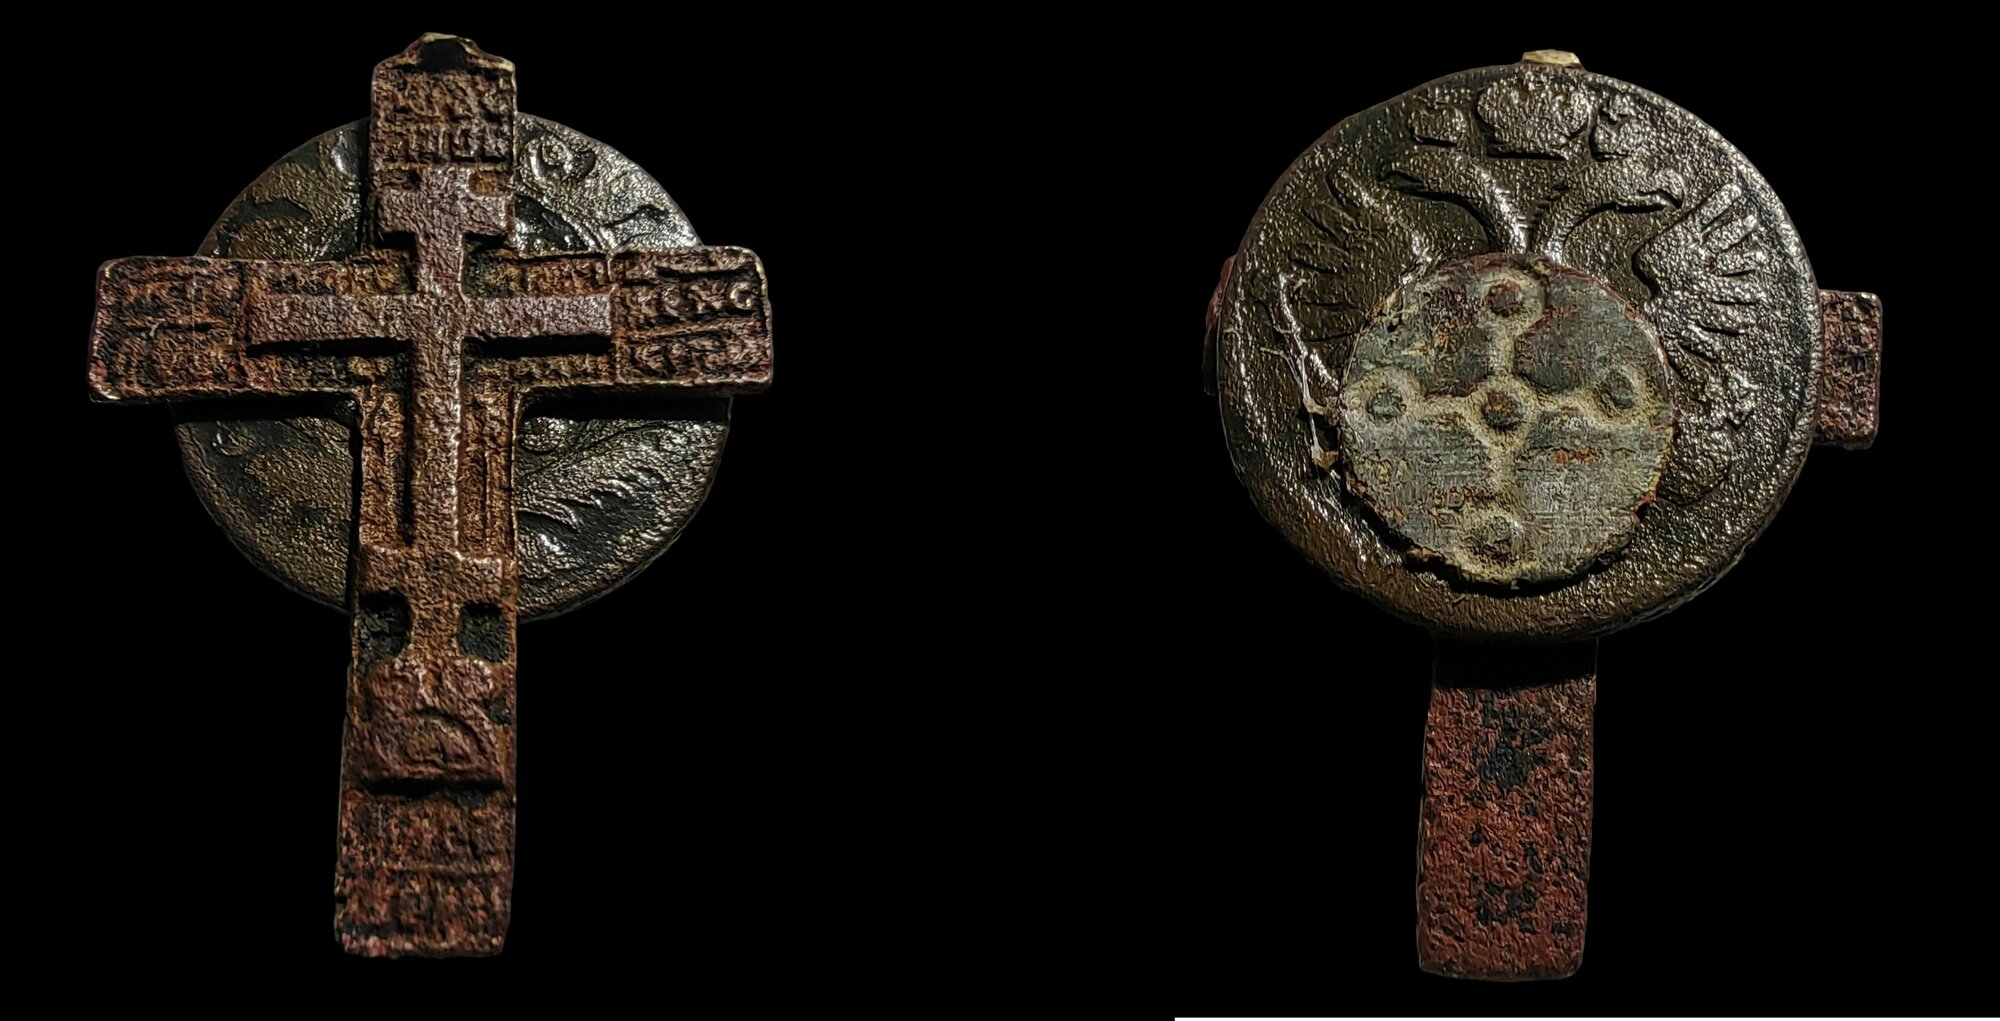 Двоеверие - Солярный крест. Религиозный артефакт - Древний оберег Язычество + Христианство